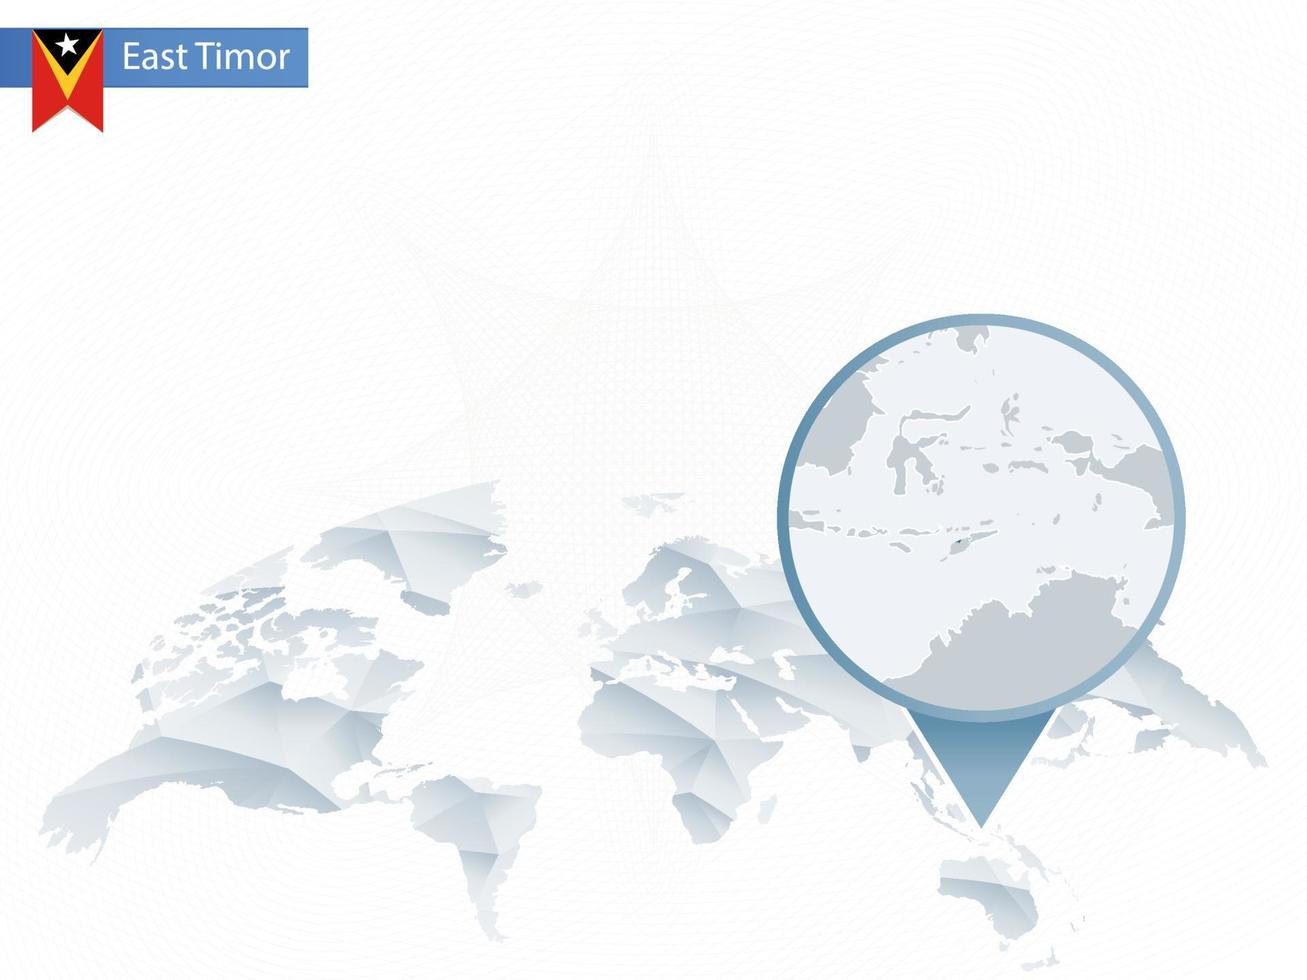 mapa del mundo redondeado abstracto con mapa de timor oriental detallado anclado. vector